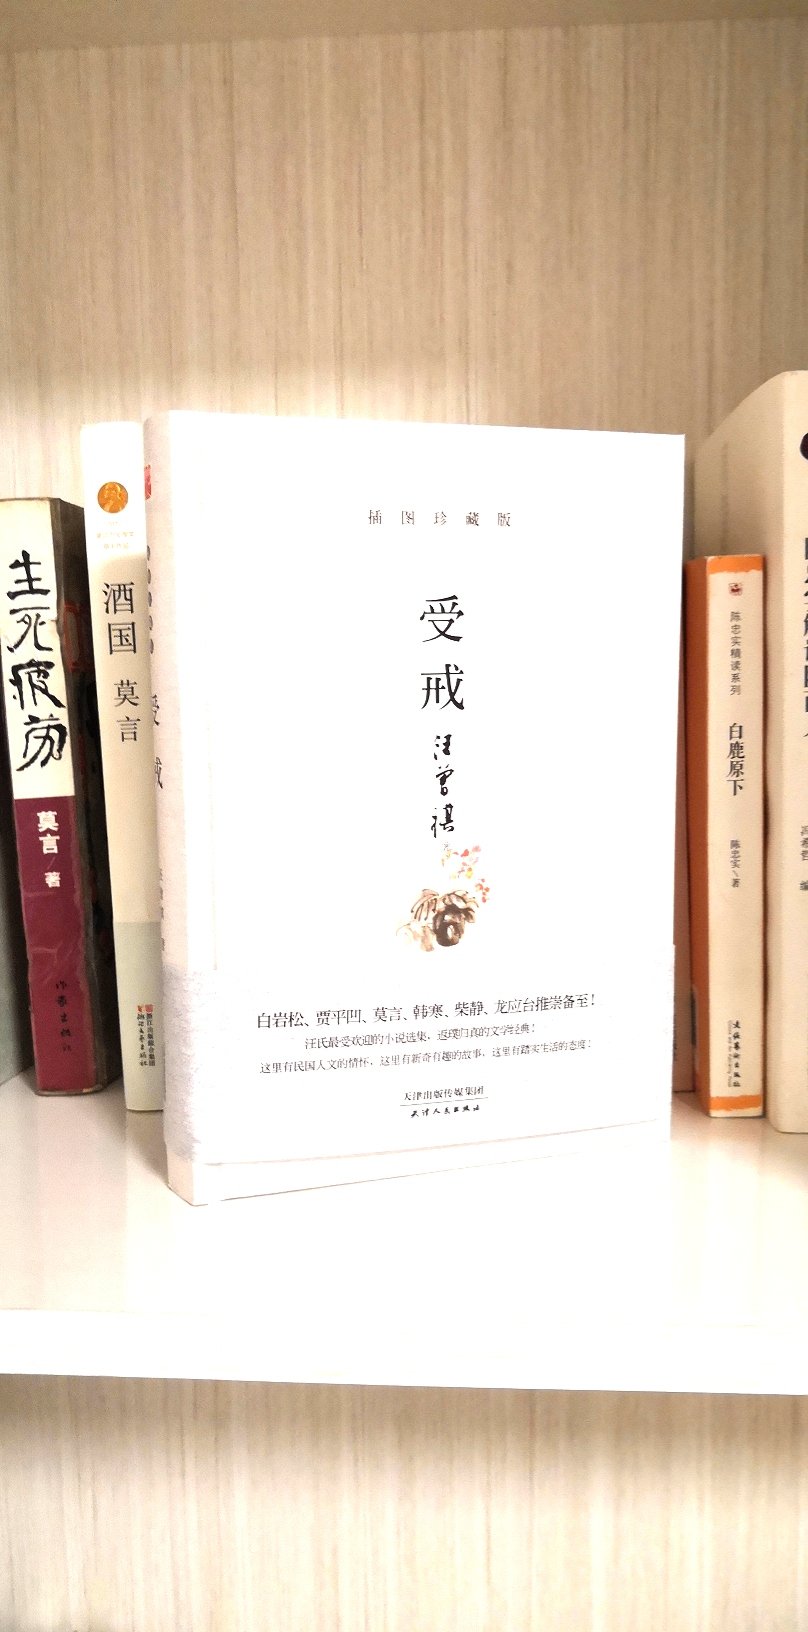 汪曾祺的书值得一读。很好。